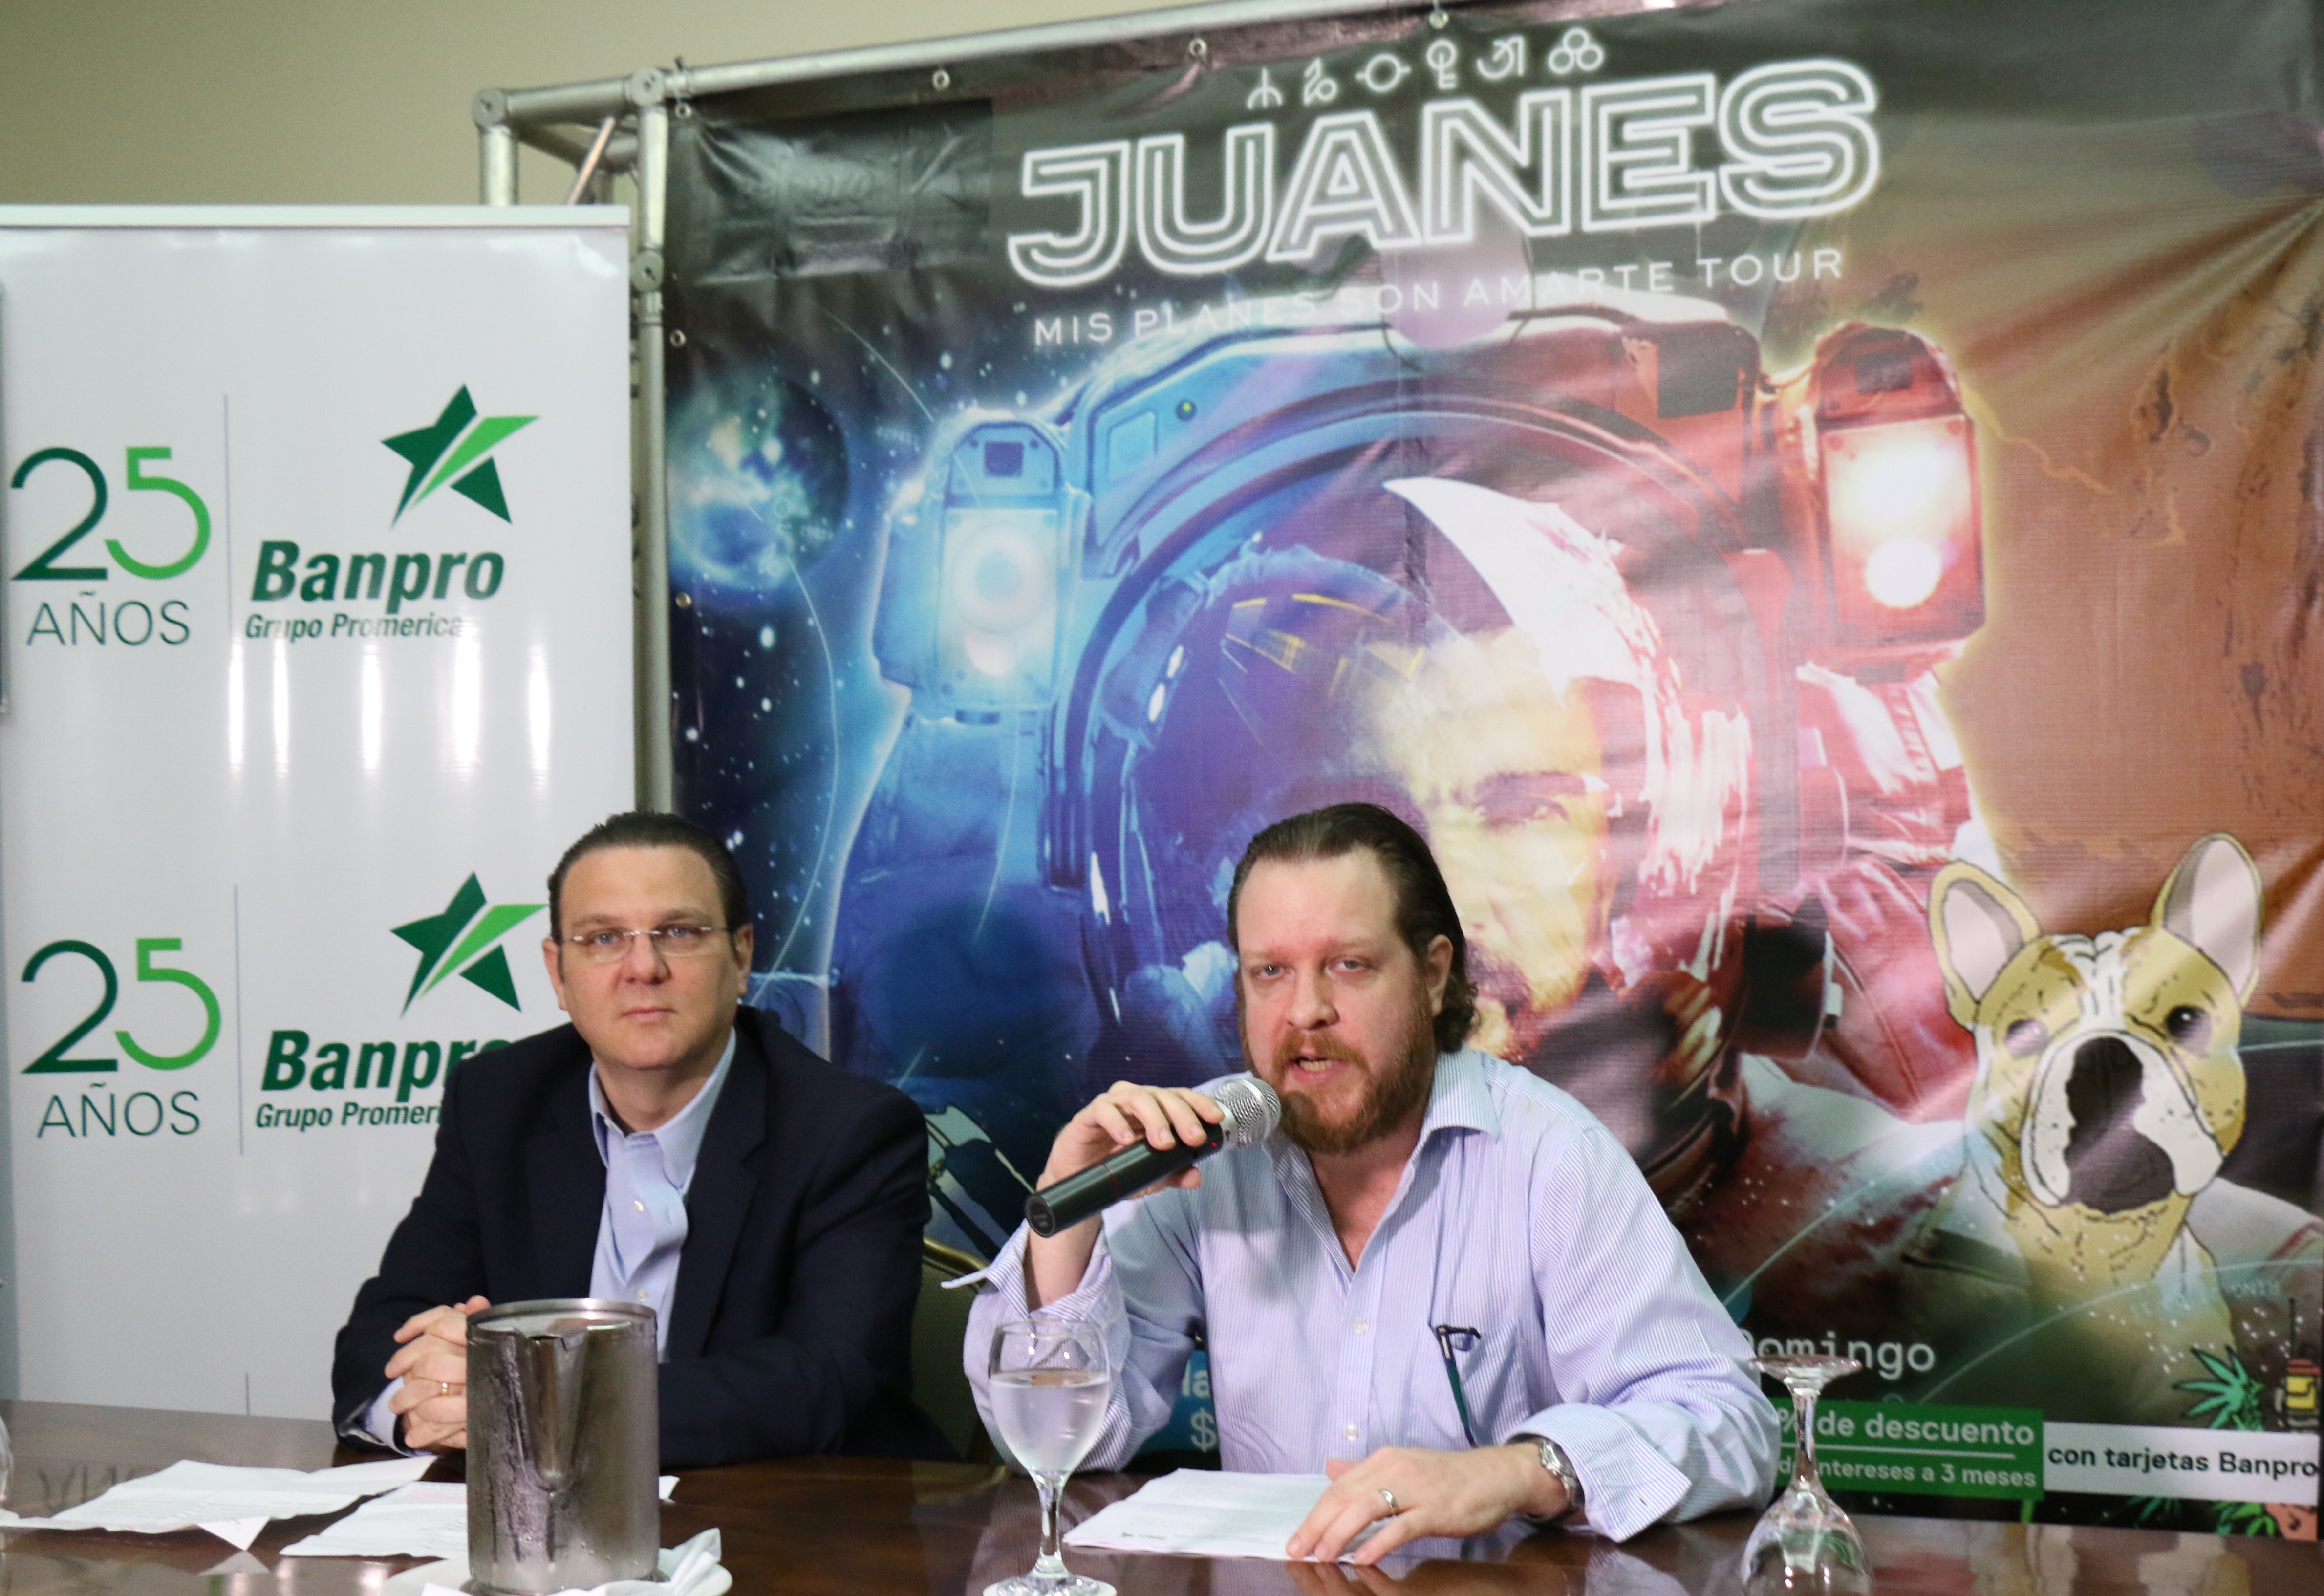 Juanes llega a Nicaragua con su tour “Mis planes son amarte”